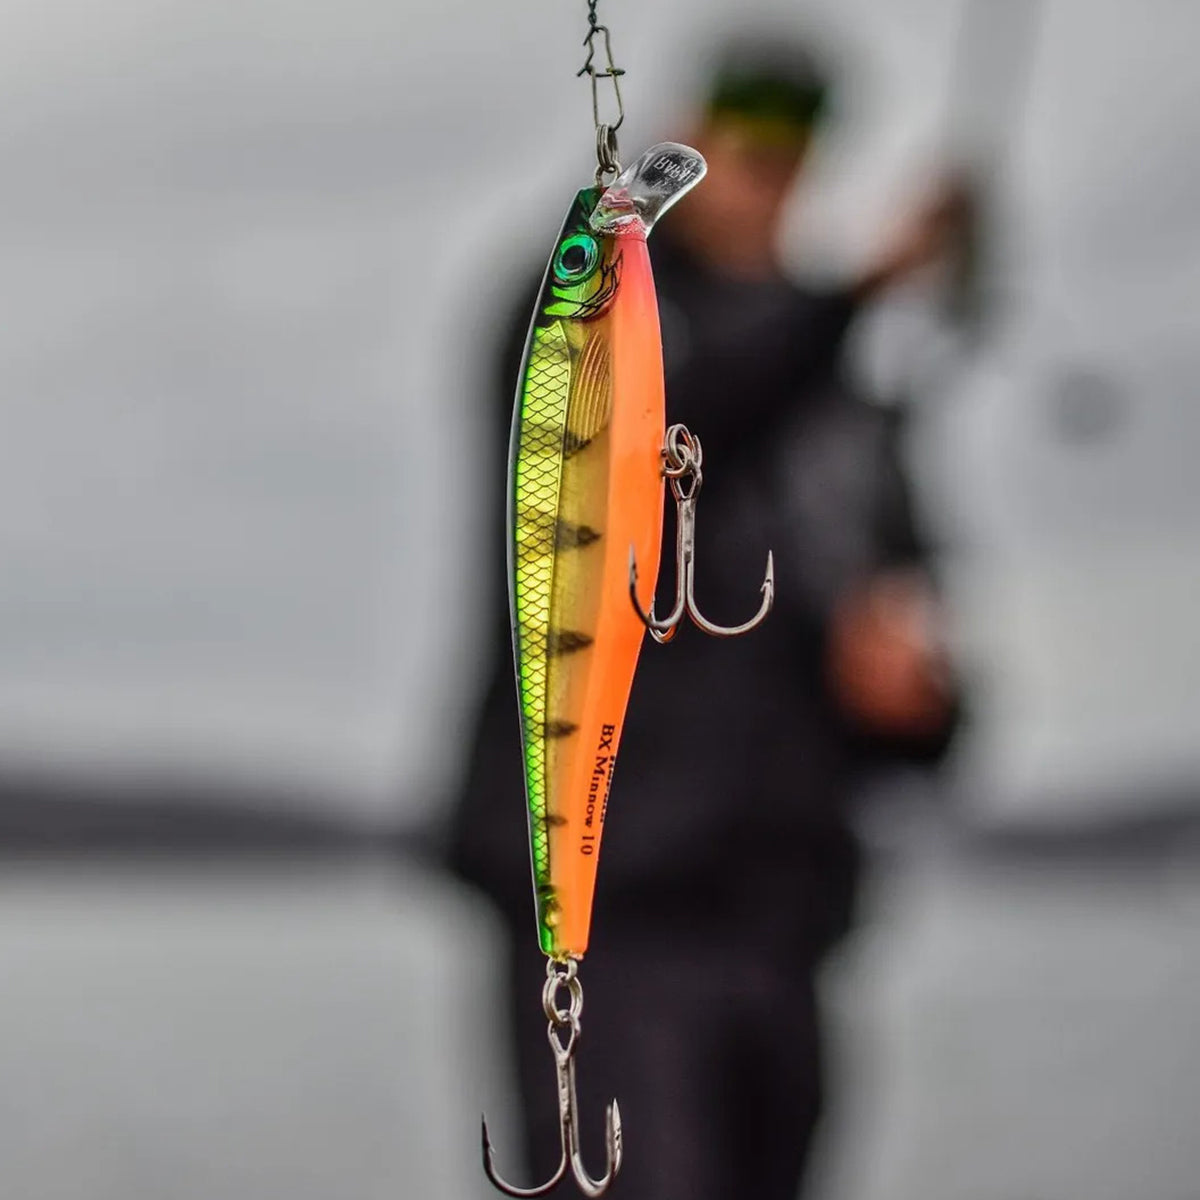 Rapala Flat Rap 08 Fishing Lure - Rainbow Trout Rapala